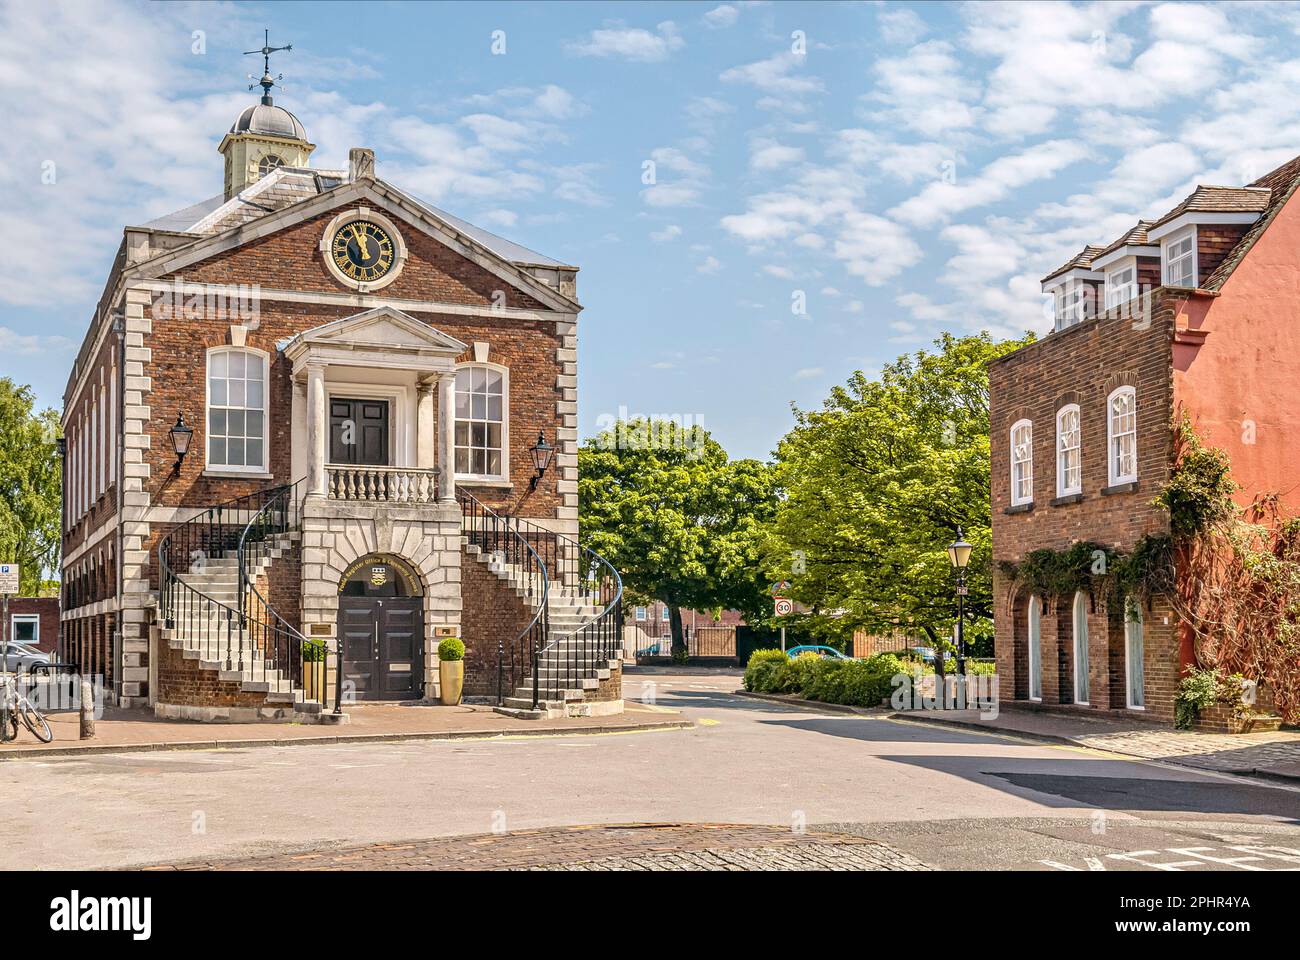 Guildhall dans la vieille ville de Poole, Dorset, Angleterre, Royaume-Uni Banque D'Images